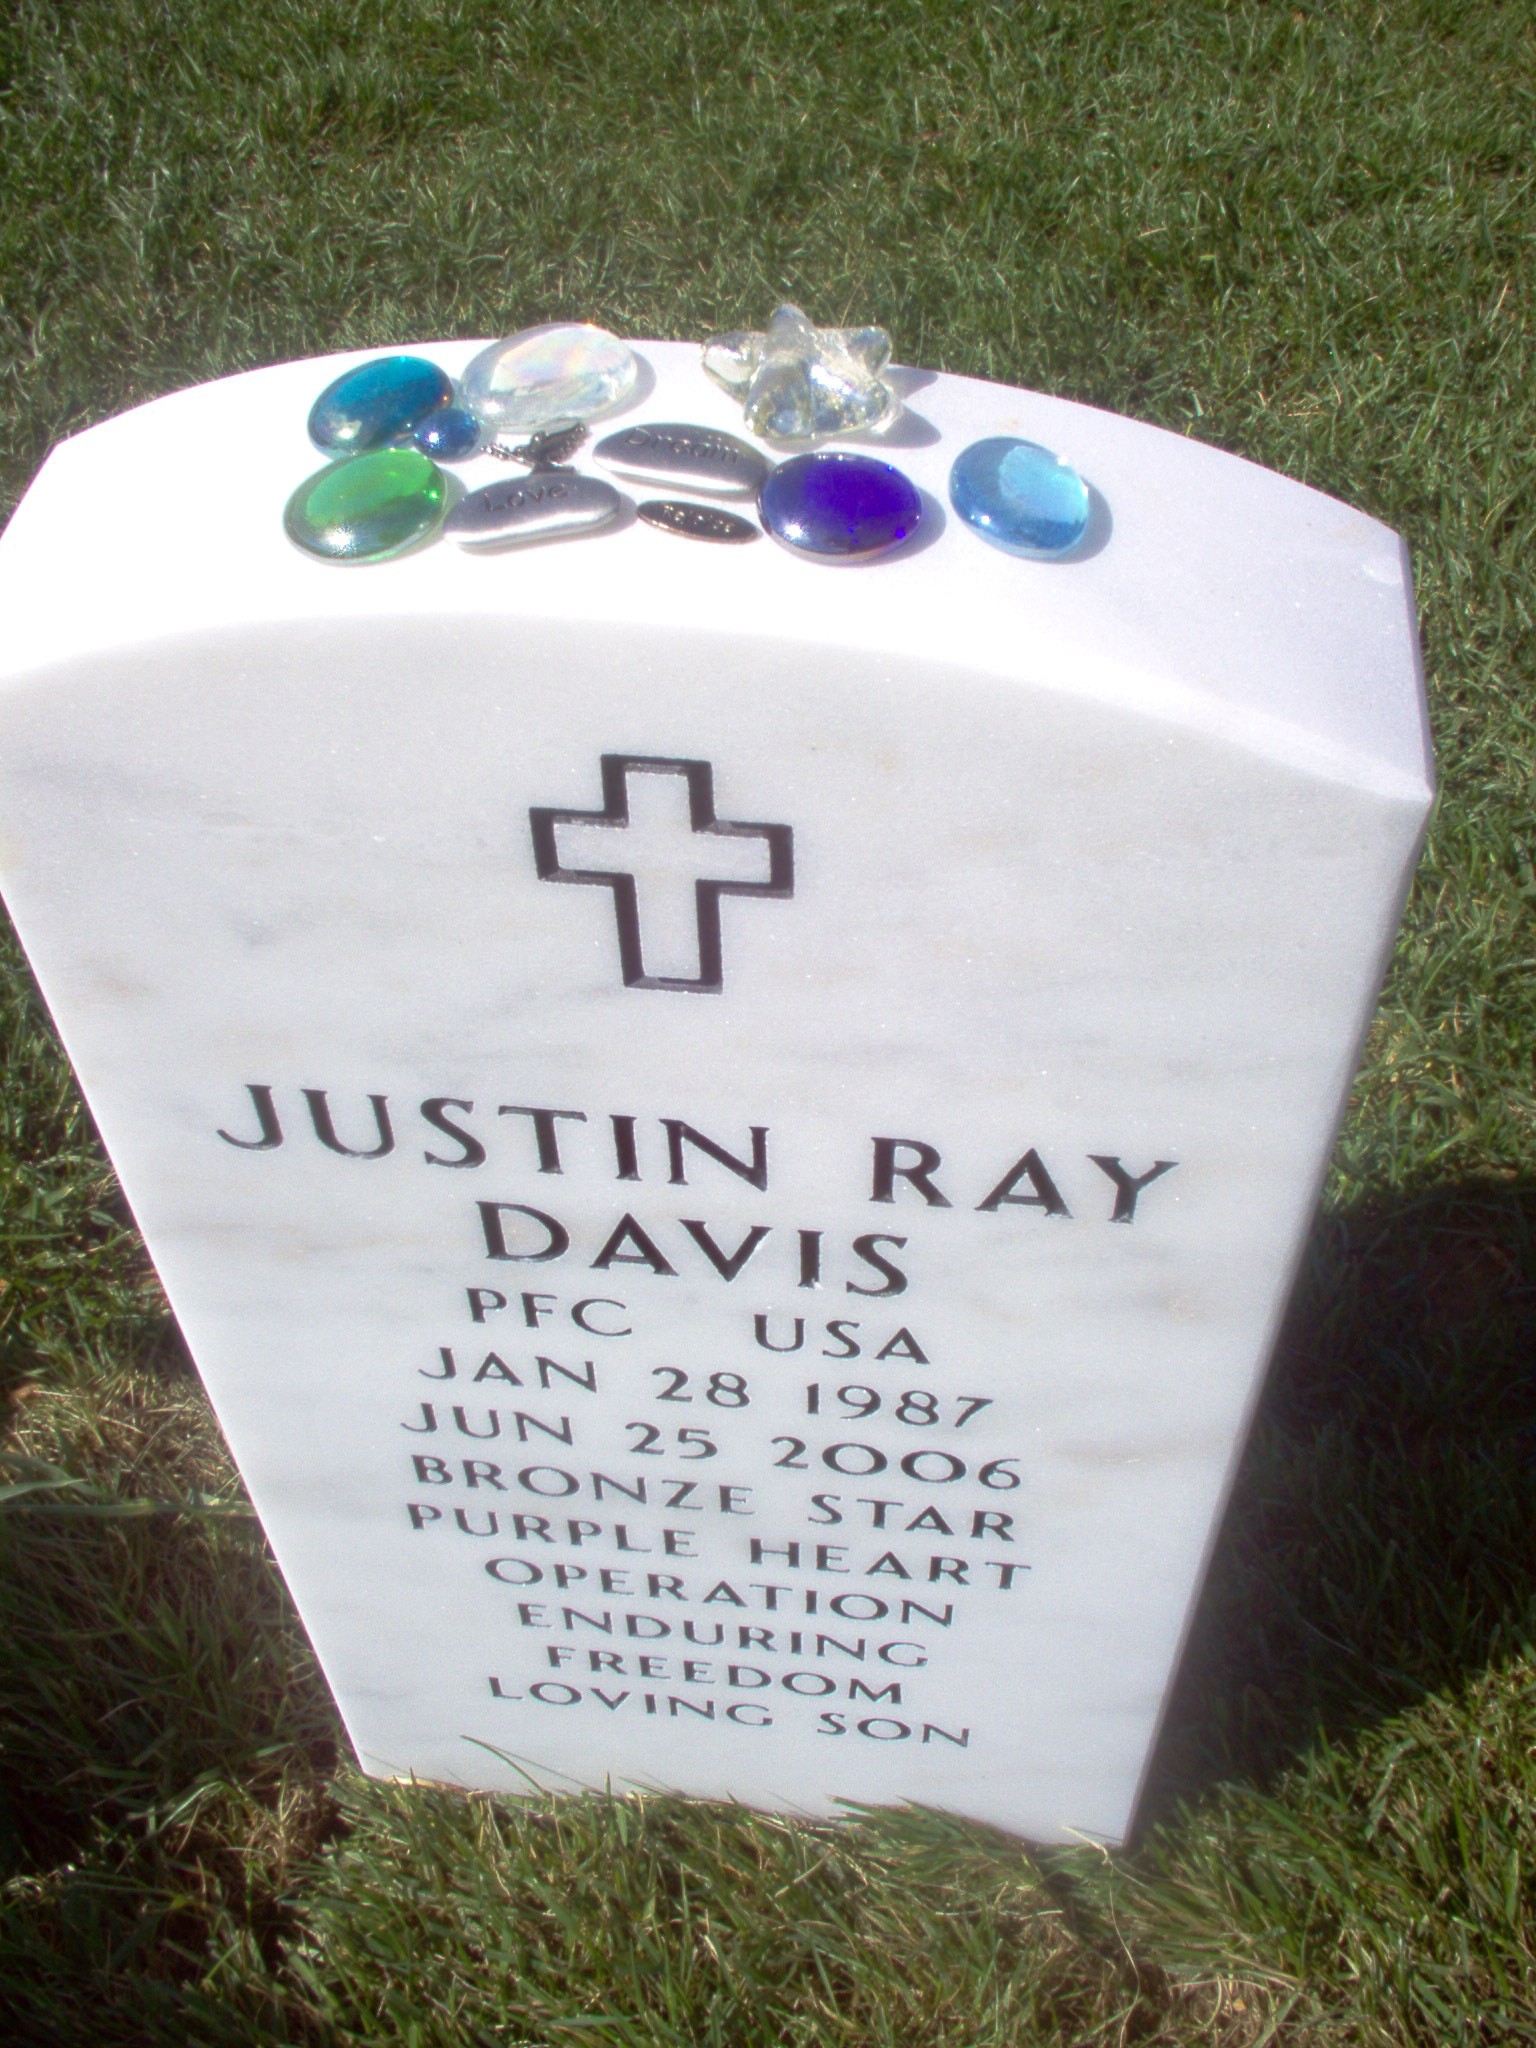 jrdavis-gravesite-photo-september-2006-004